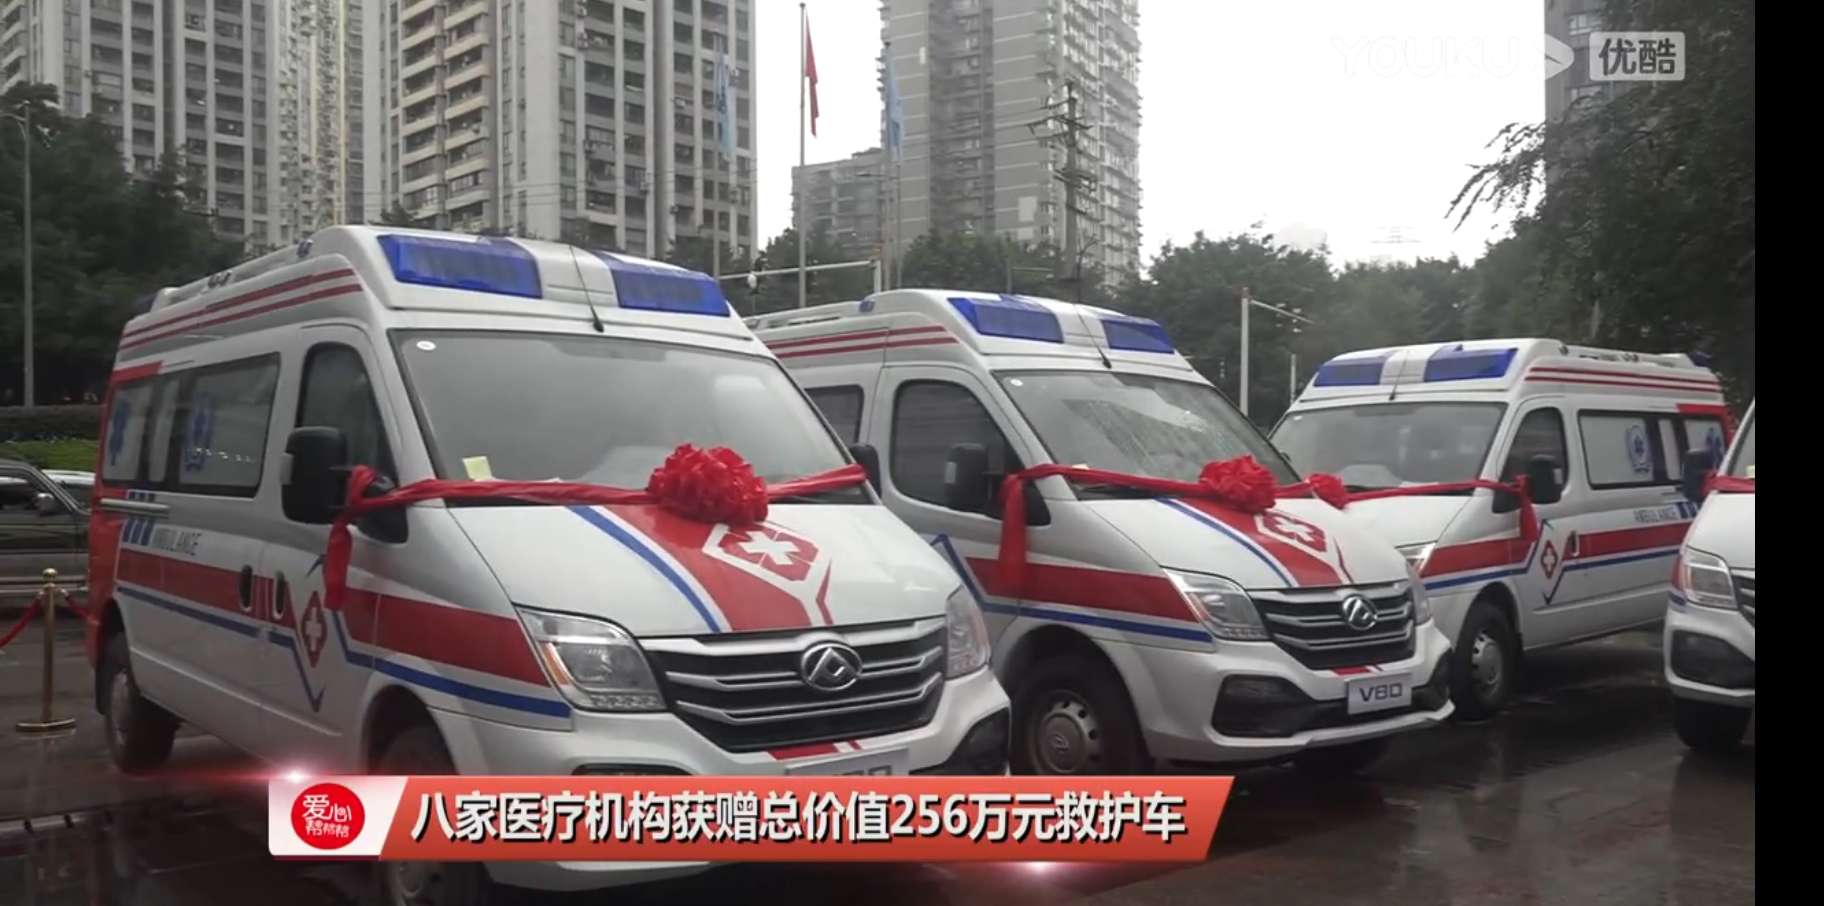 八家医疗机构获赠总价值256万元救护车